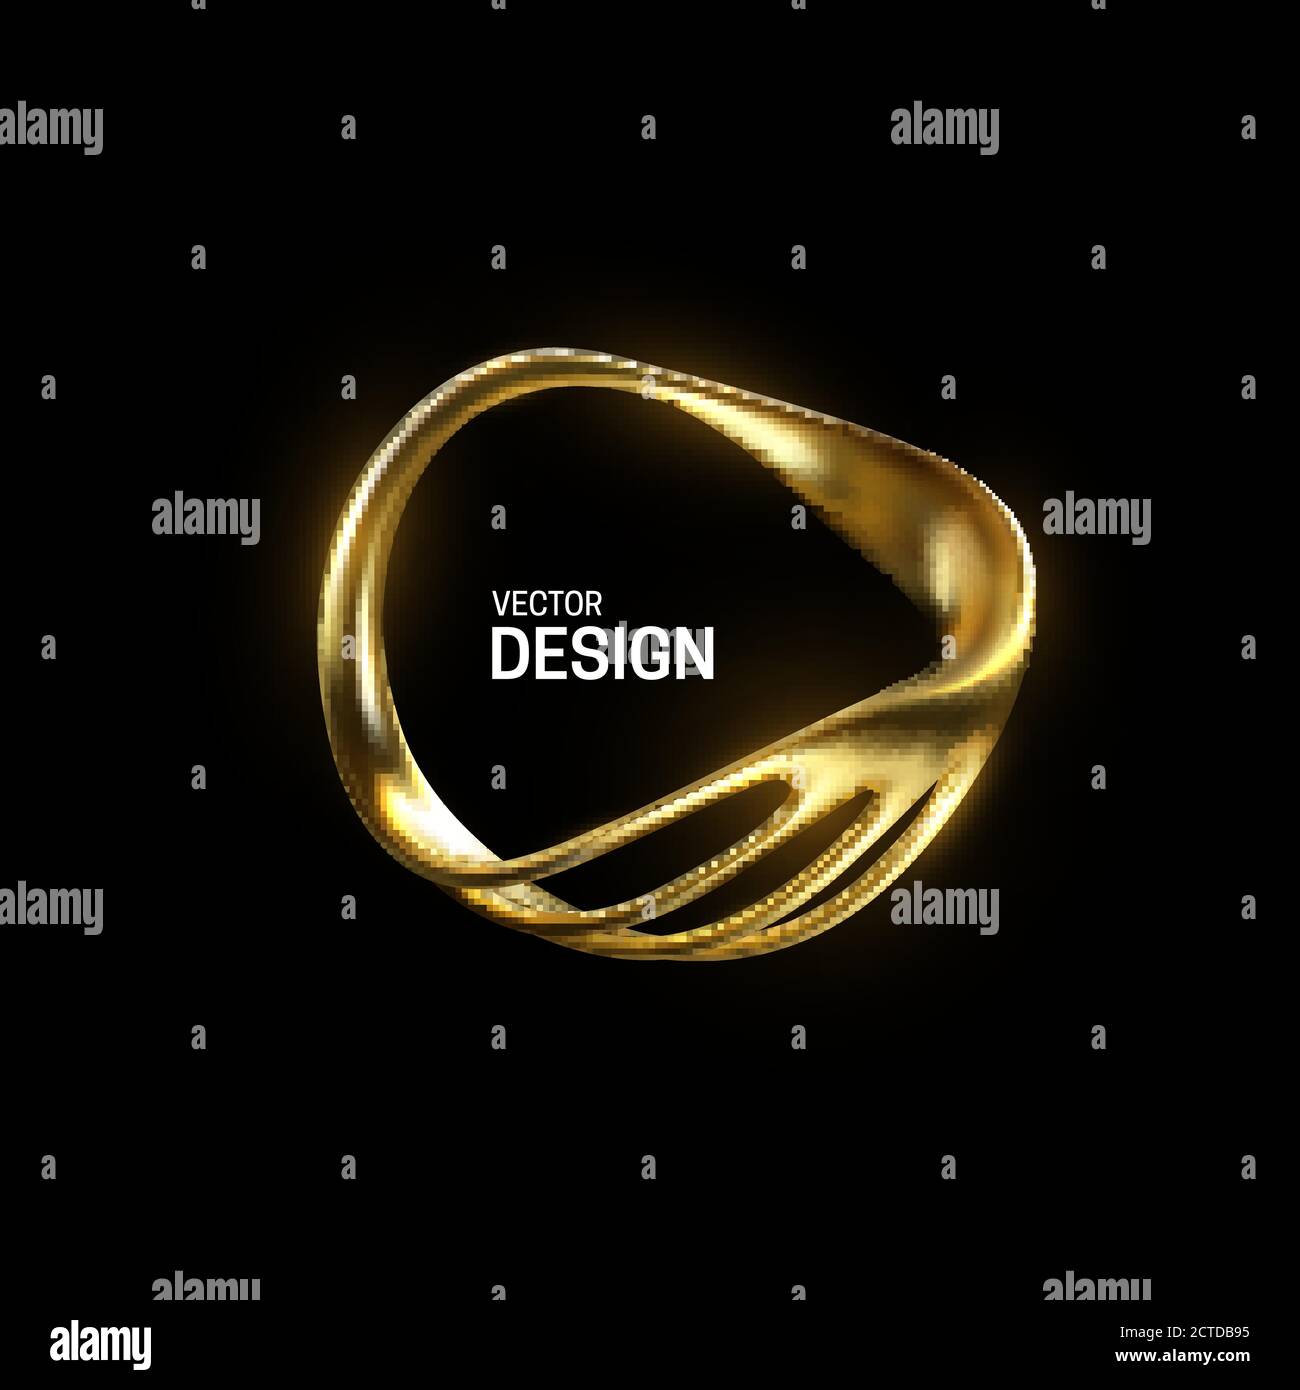 Abstrakte goldene organische Form. Vektor-3d-Illustration. Glänzend eleganter Ring auf schwarzem Hintergrund isoliert. Schmuckkonzept. Glänzendes Rahmendesign. Realisti Stock Vektor